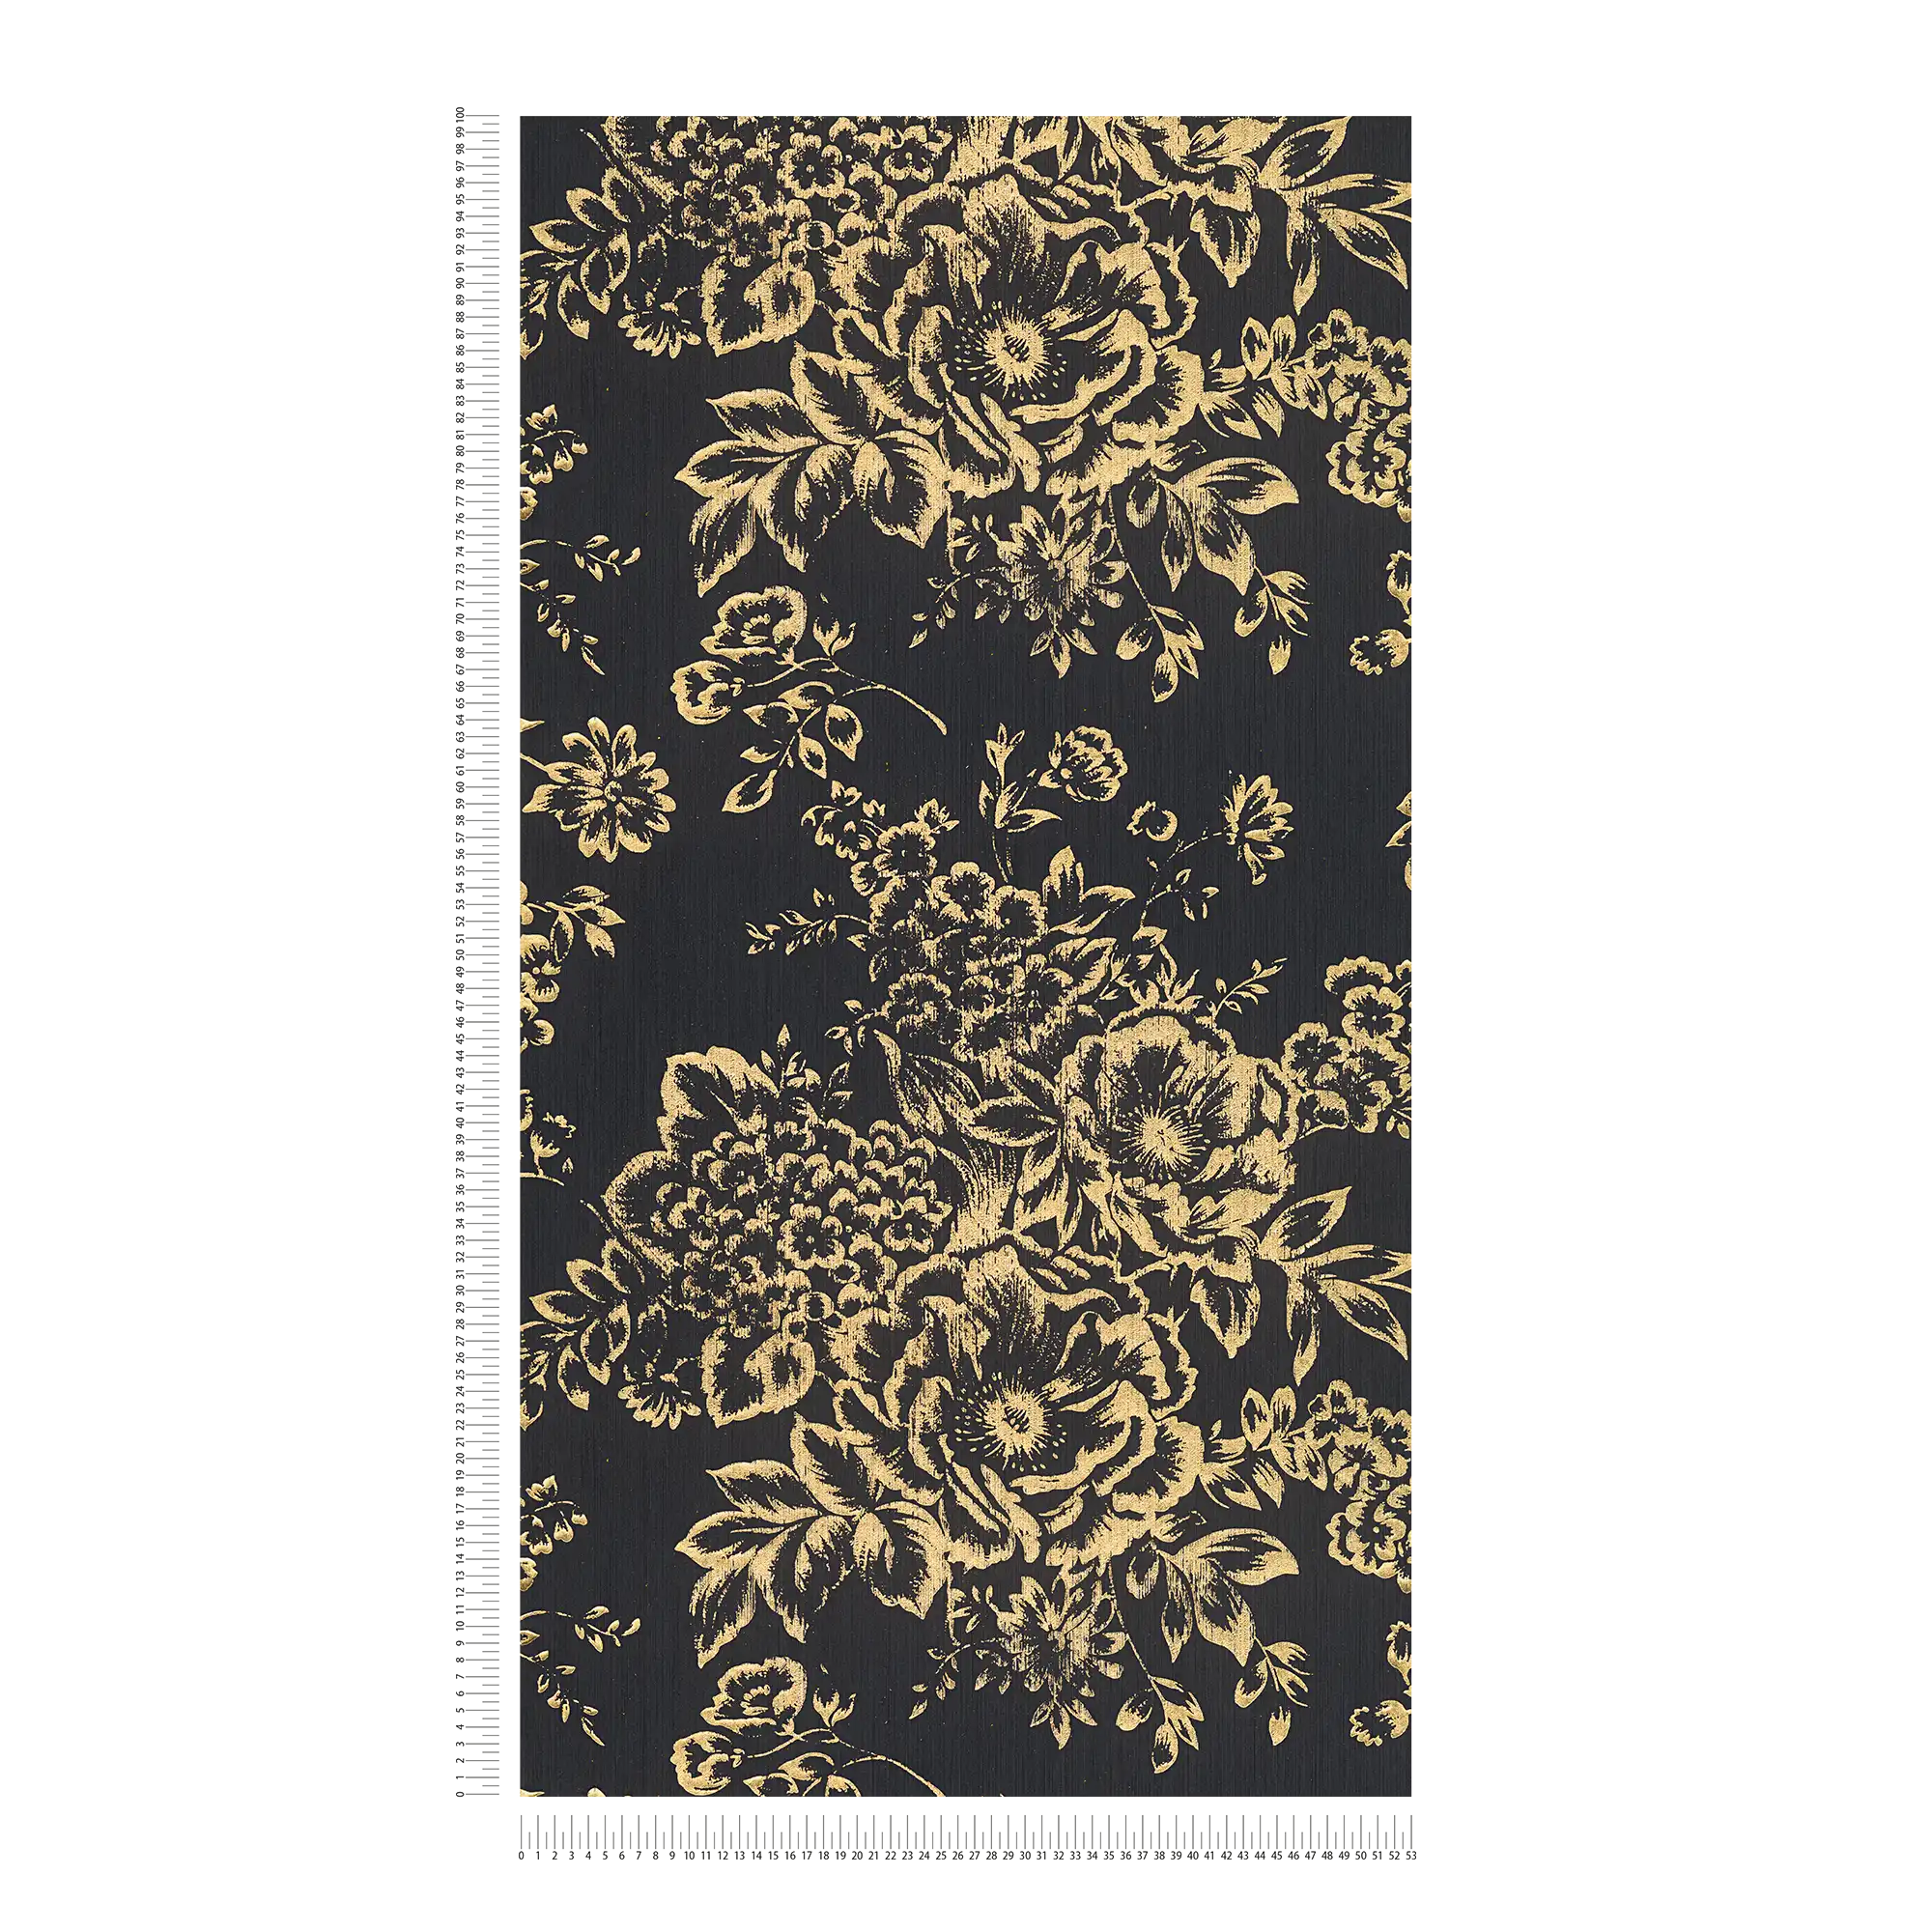             Textuurbehang met gouden bloemenpatroon - goud, zwart
        